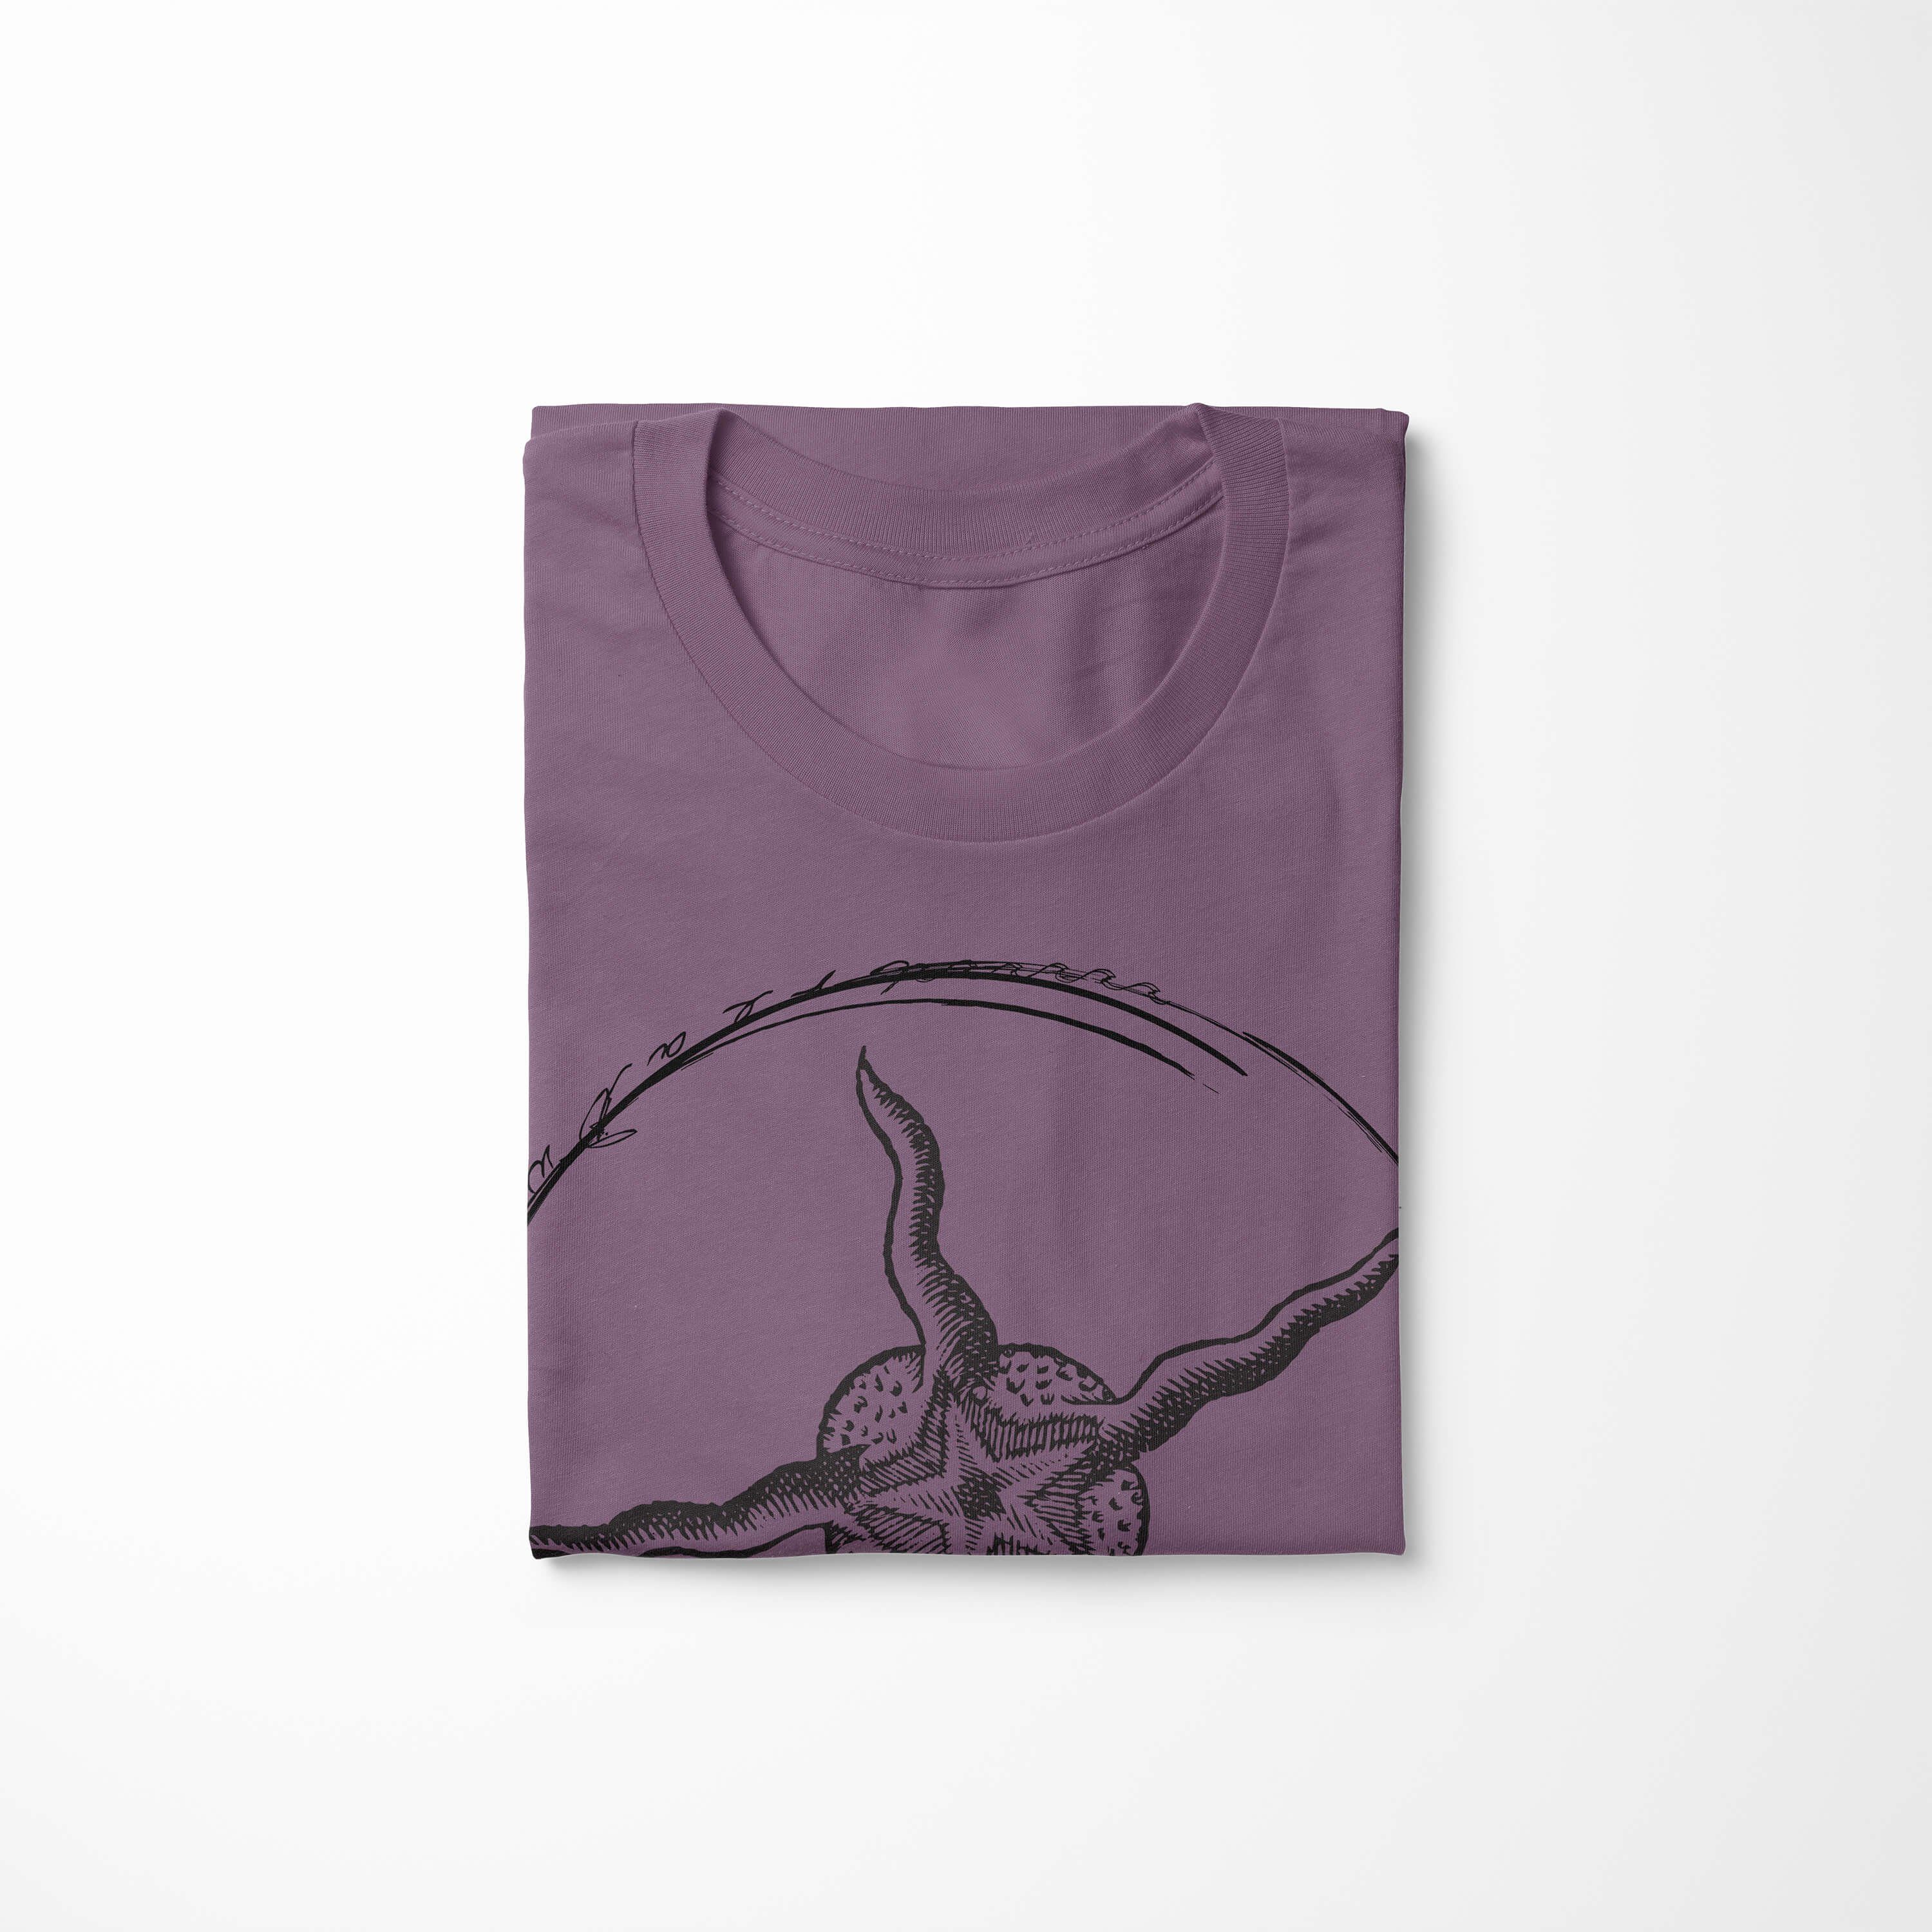 T-Shirt Struktur Tiefsee Serie: Sea Sea sportlicher Creatures, - Schnitt Shiraz Sinus Art / T-Shirt 019 und Fische feine